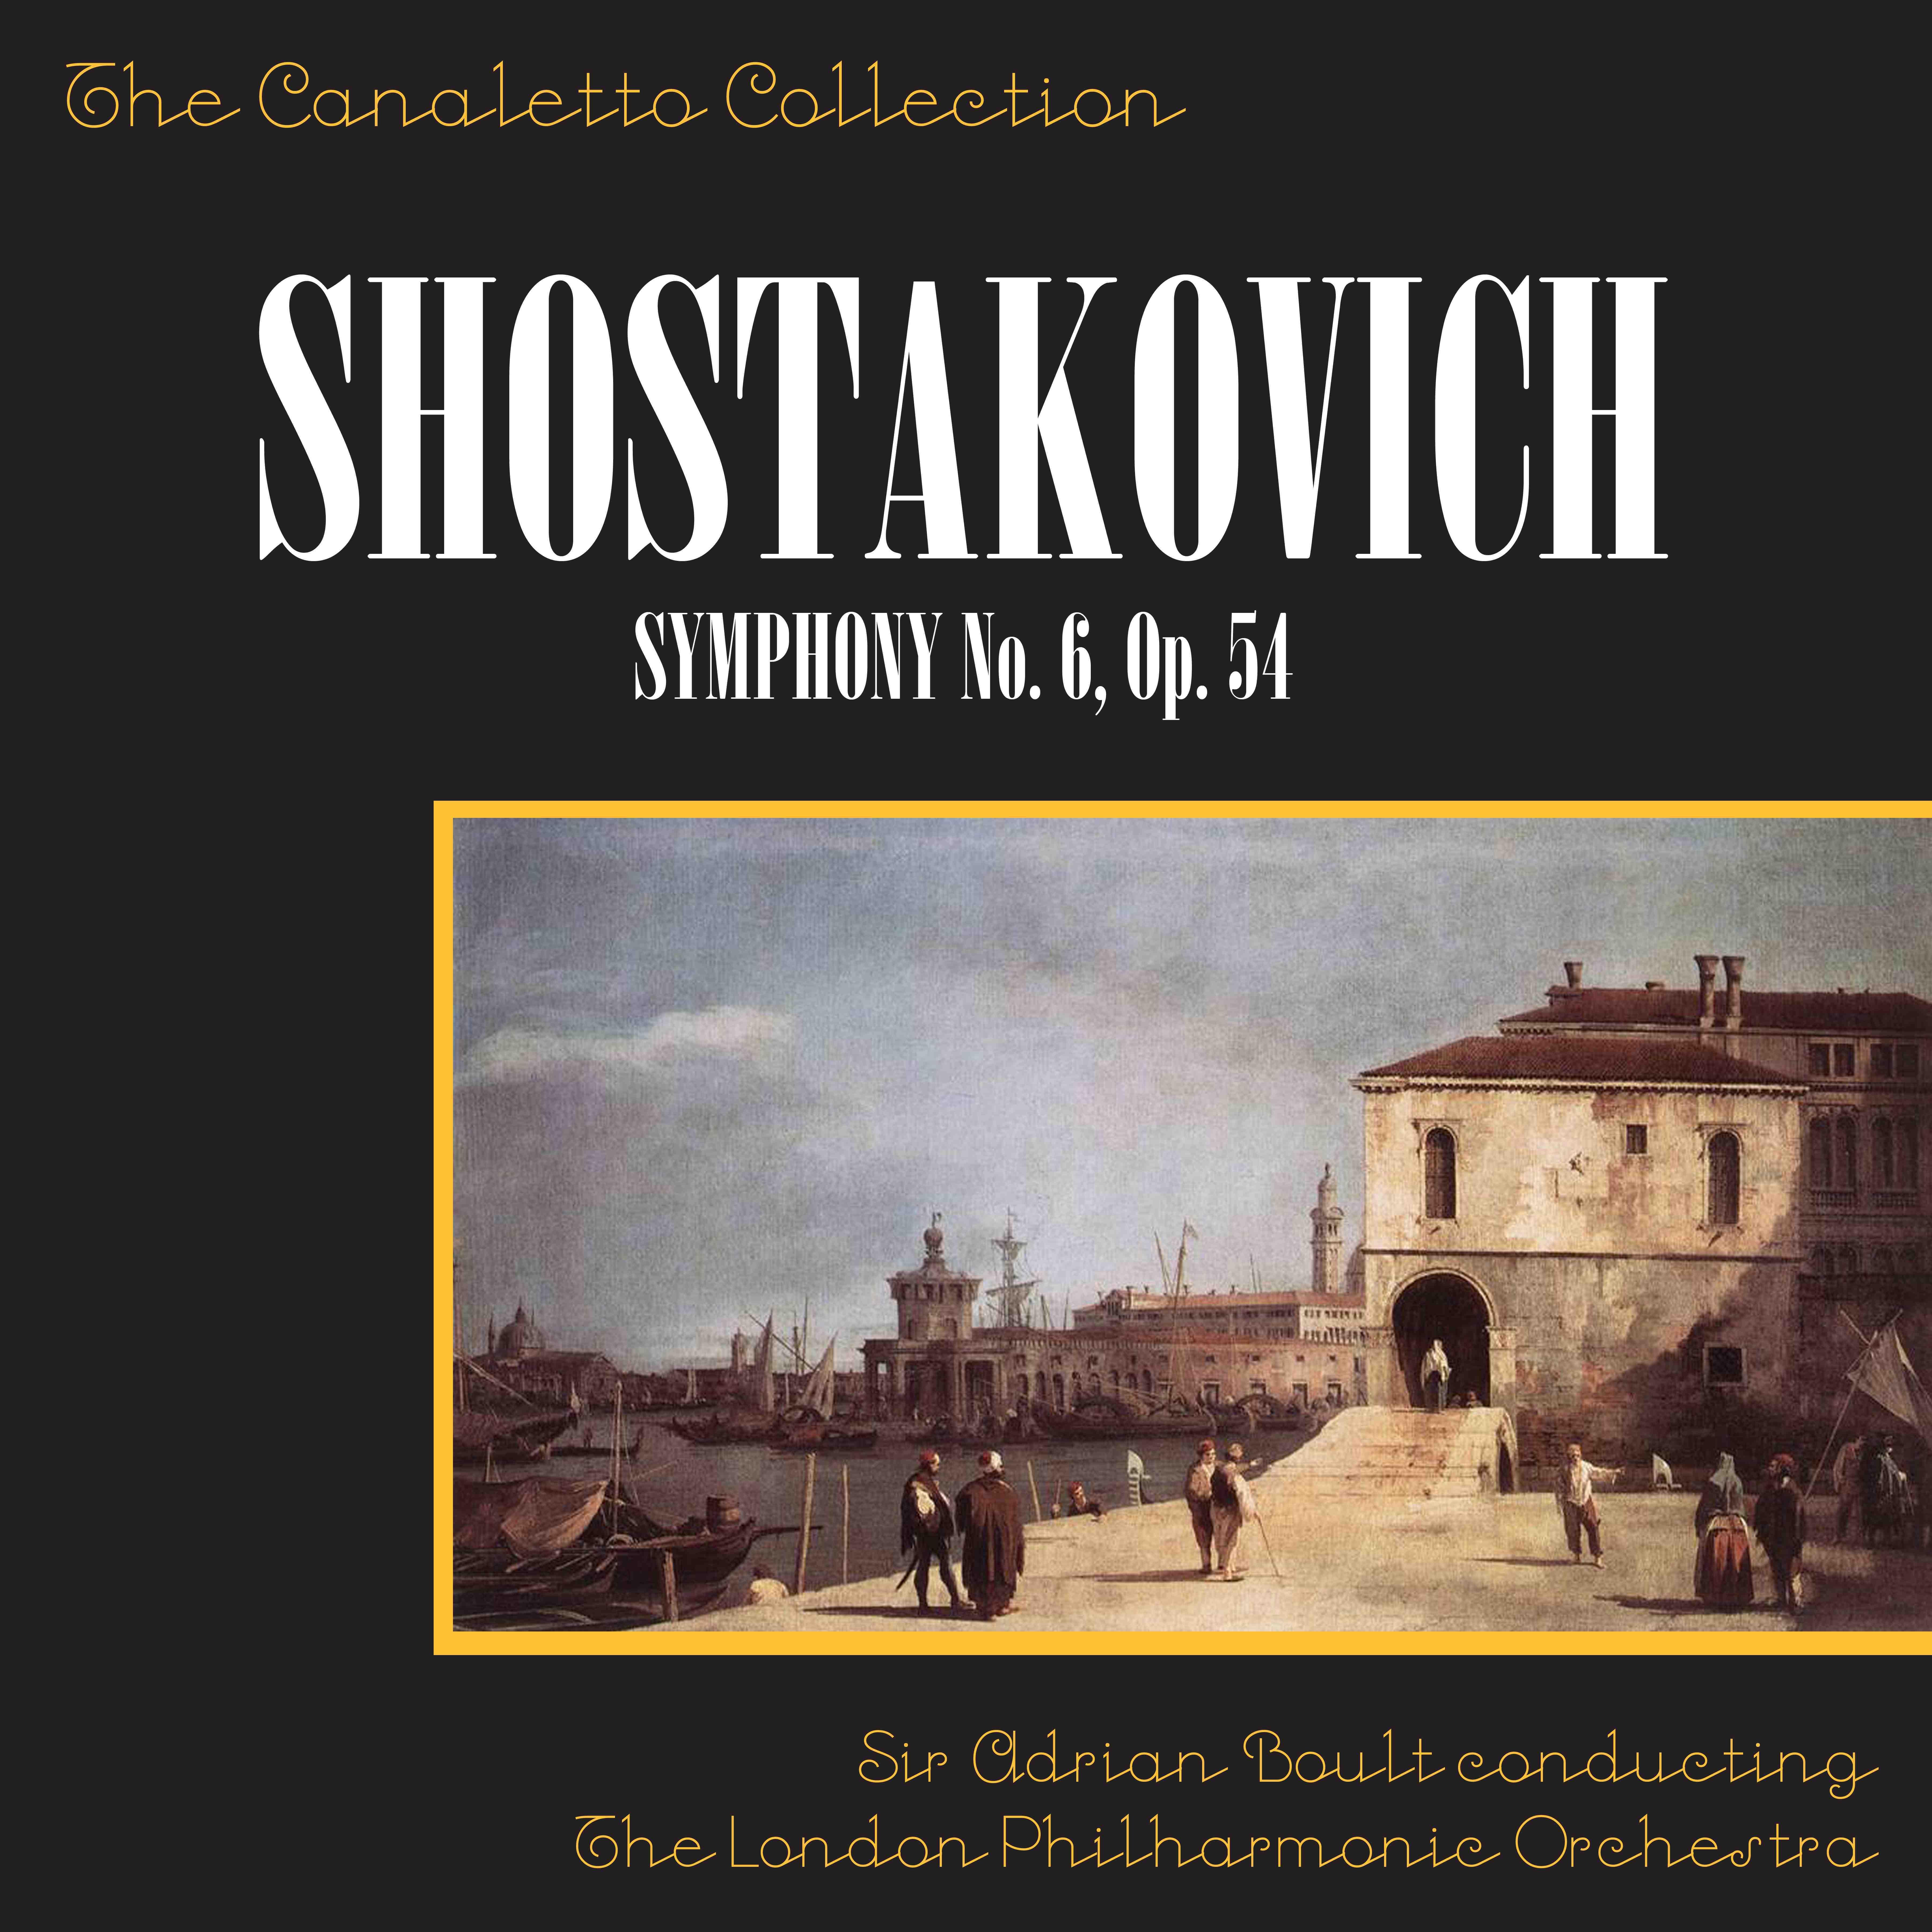 Shostakovich: Symphony No. 6, Op. 54: 1st Movement - Largo